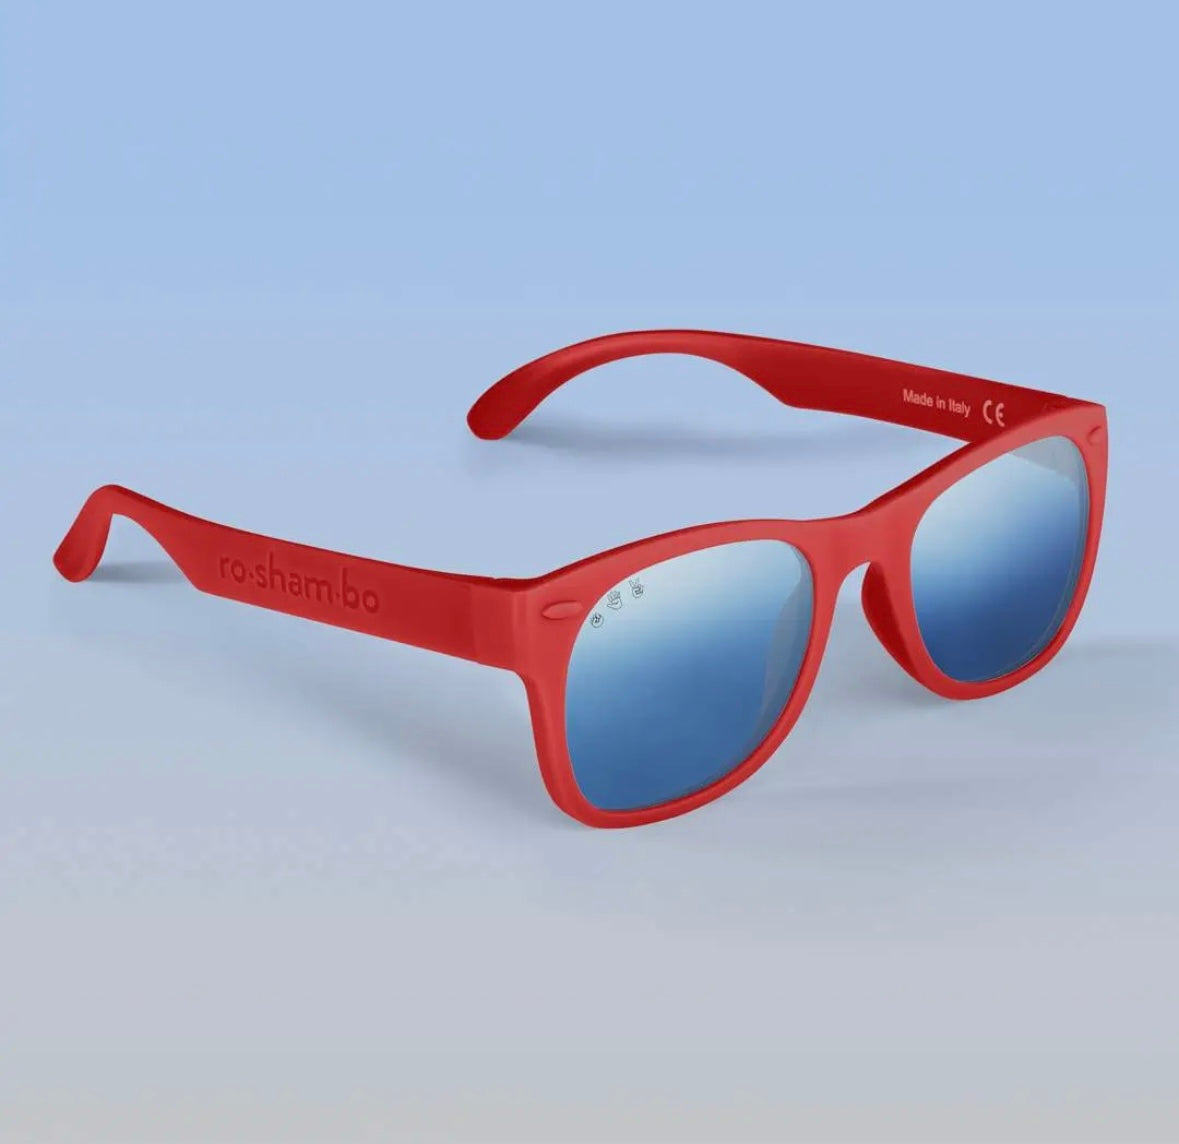 Roshambo Junior Sunglasses - Red McFly, Grey Lens